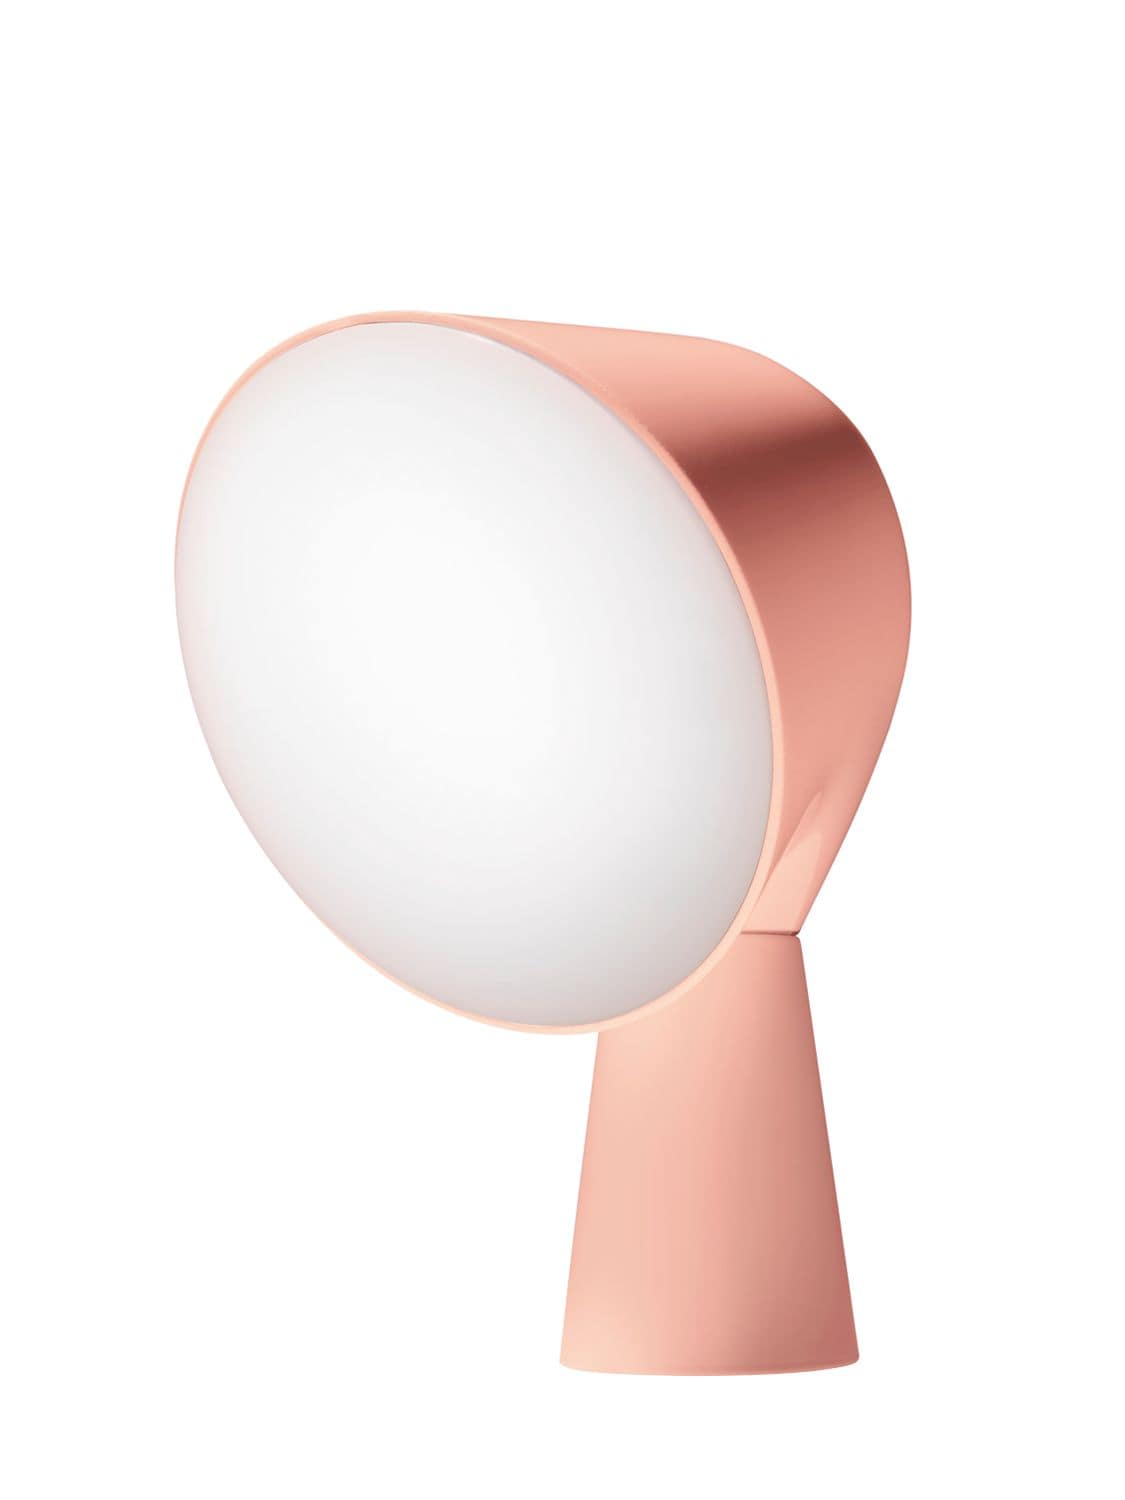 Foscarini Binic Table Lamp In Pink